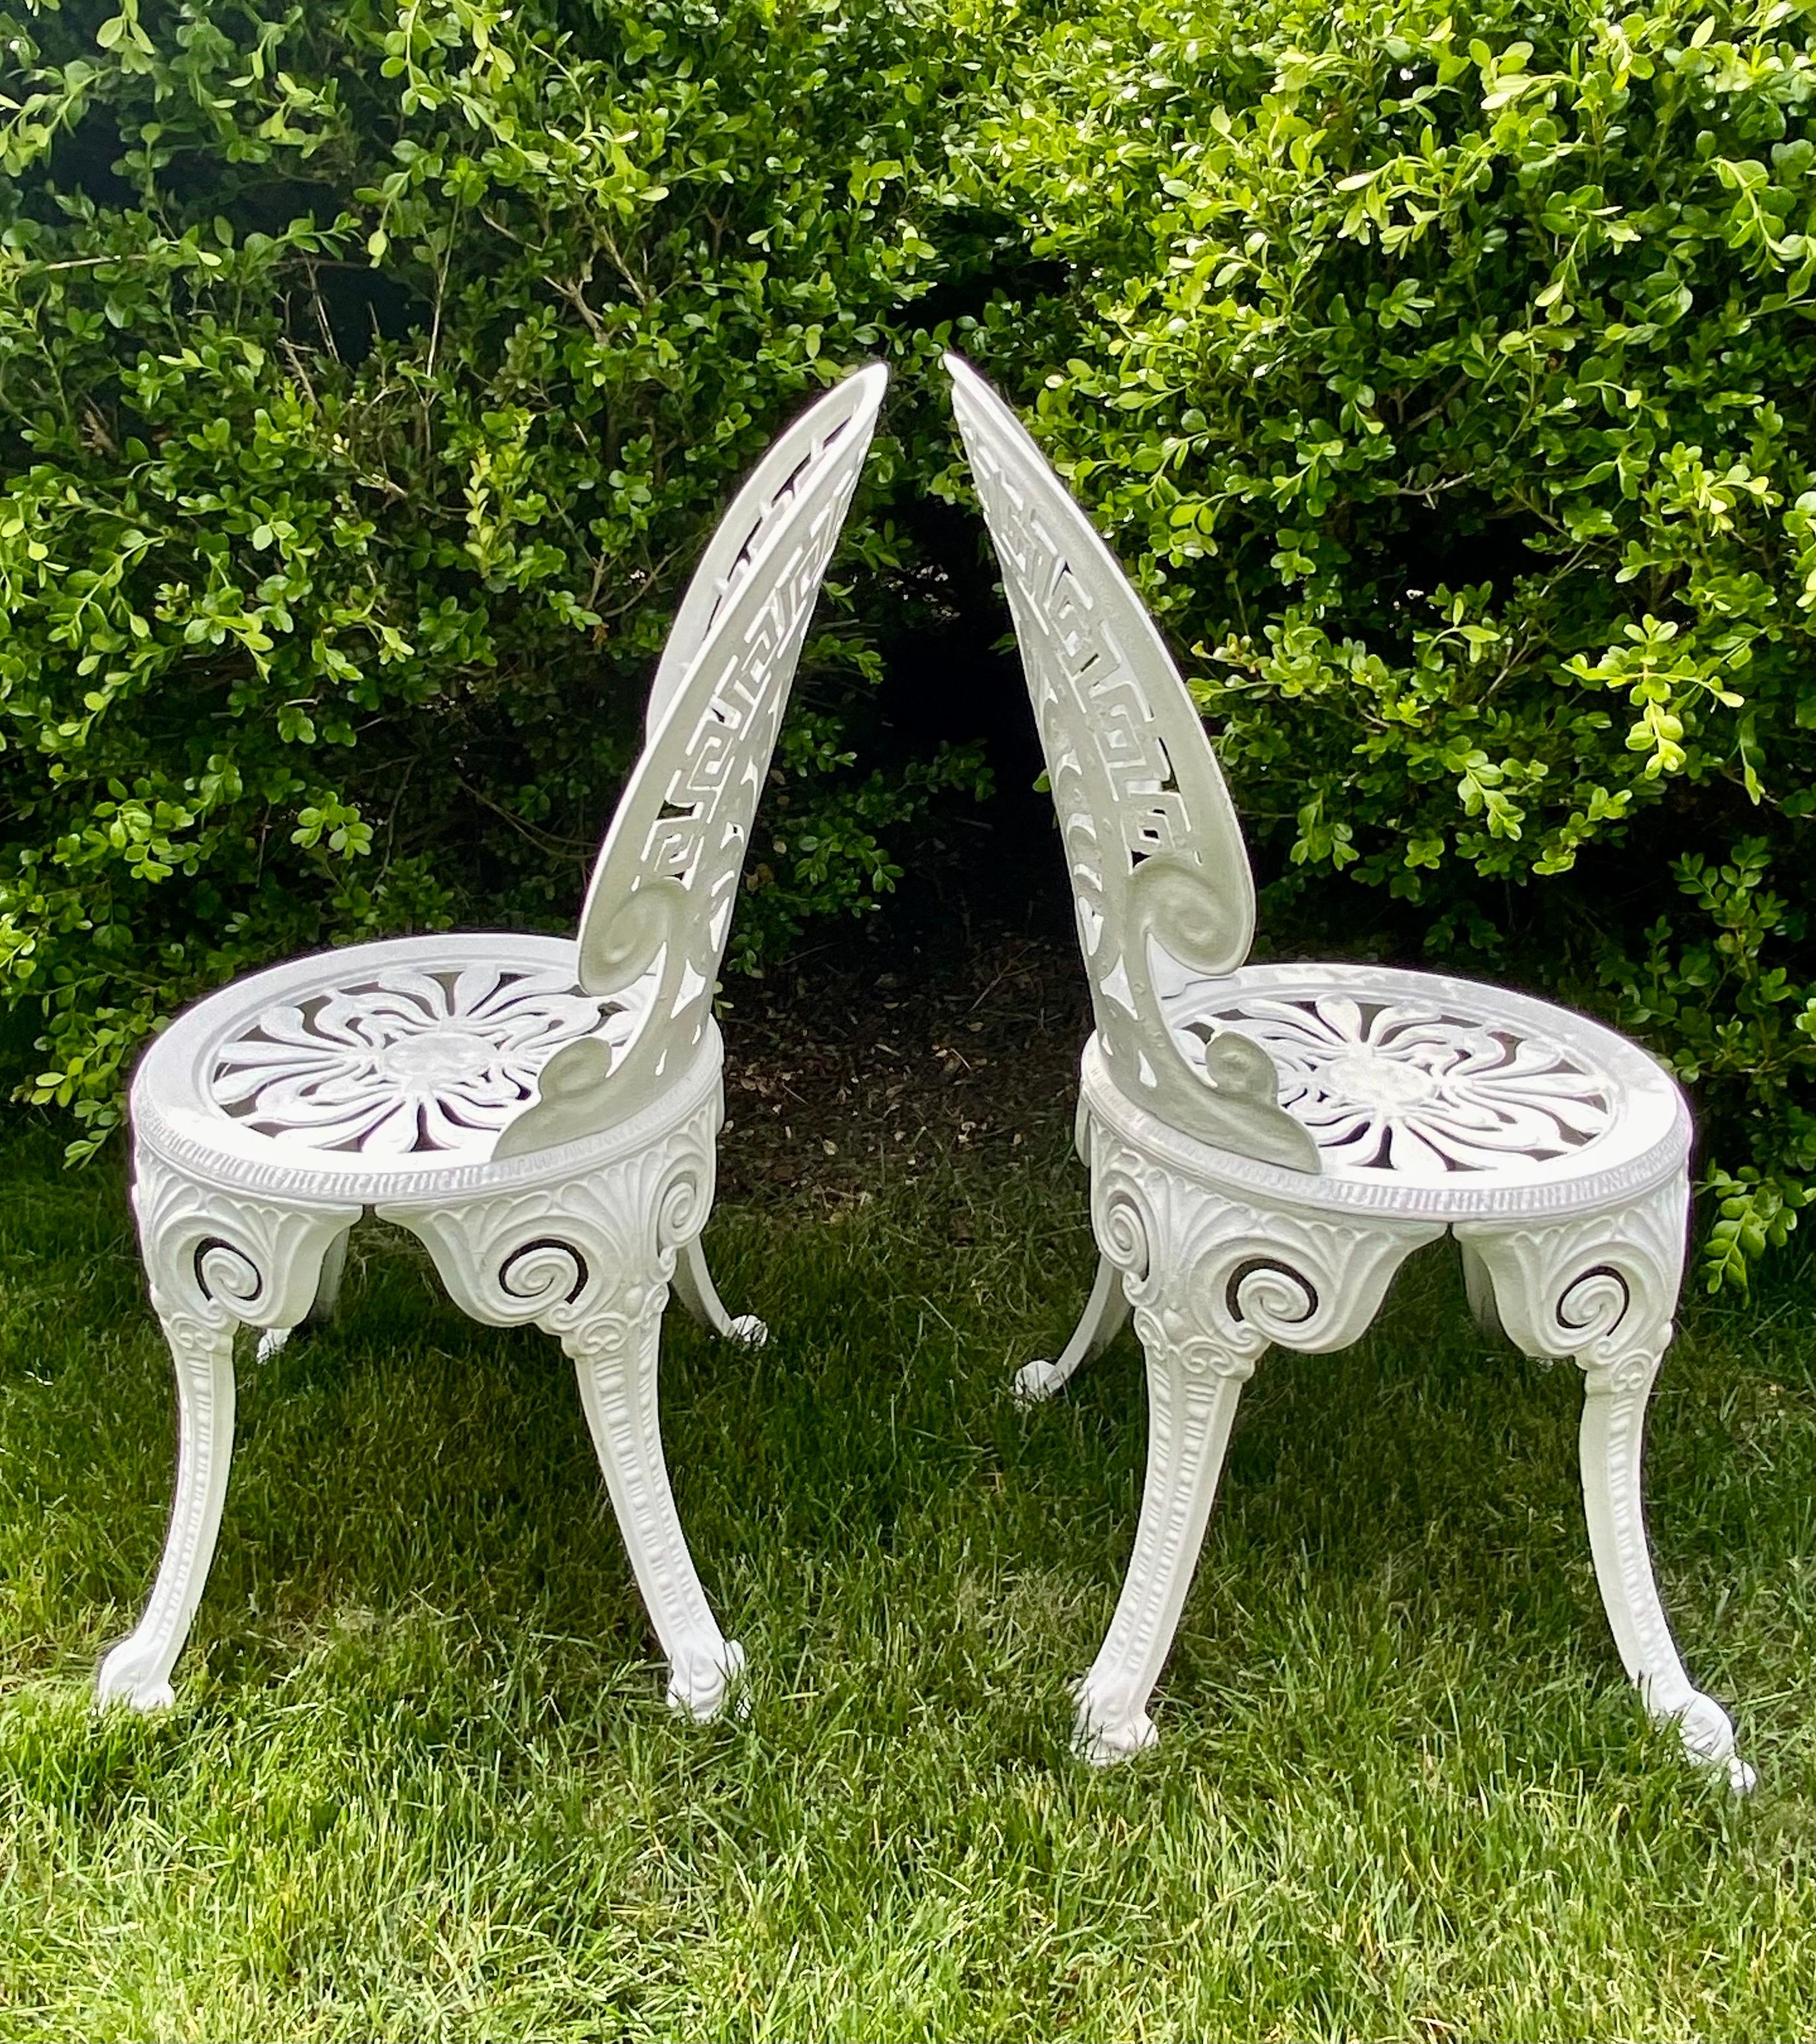 Ein Paar weiße Aluminium-Gartenstühle im Hollywood-Regency-Stil mit griechischen Schlüssel- und Fächermotiven.  Diese armlosen Beistellstühle sind die perfekte zusätzliche Sitzgelegenheit für den Garten oder die Terrasse.  Leicht, robust und